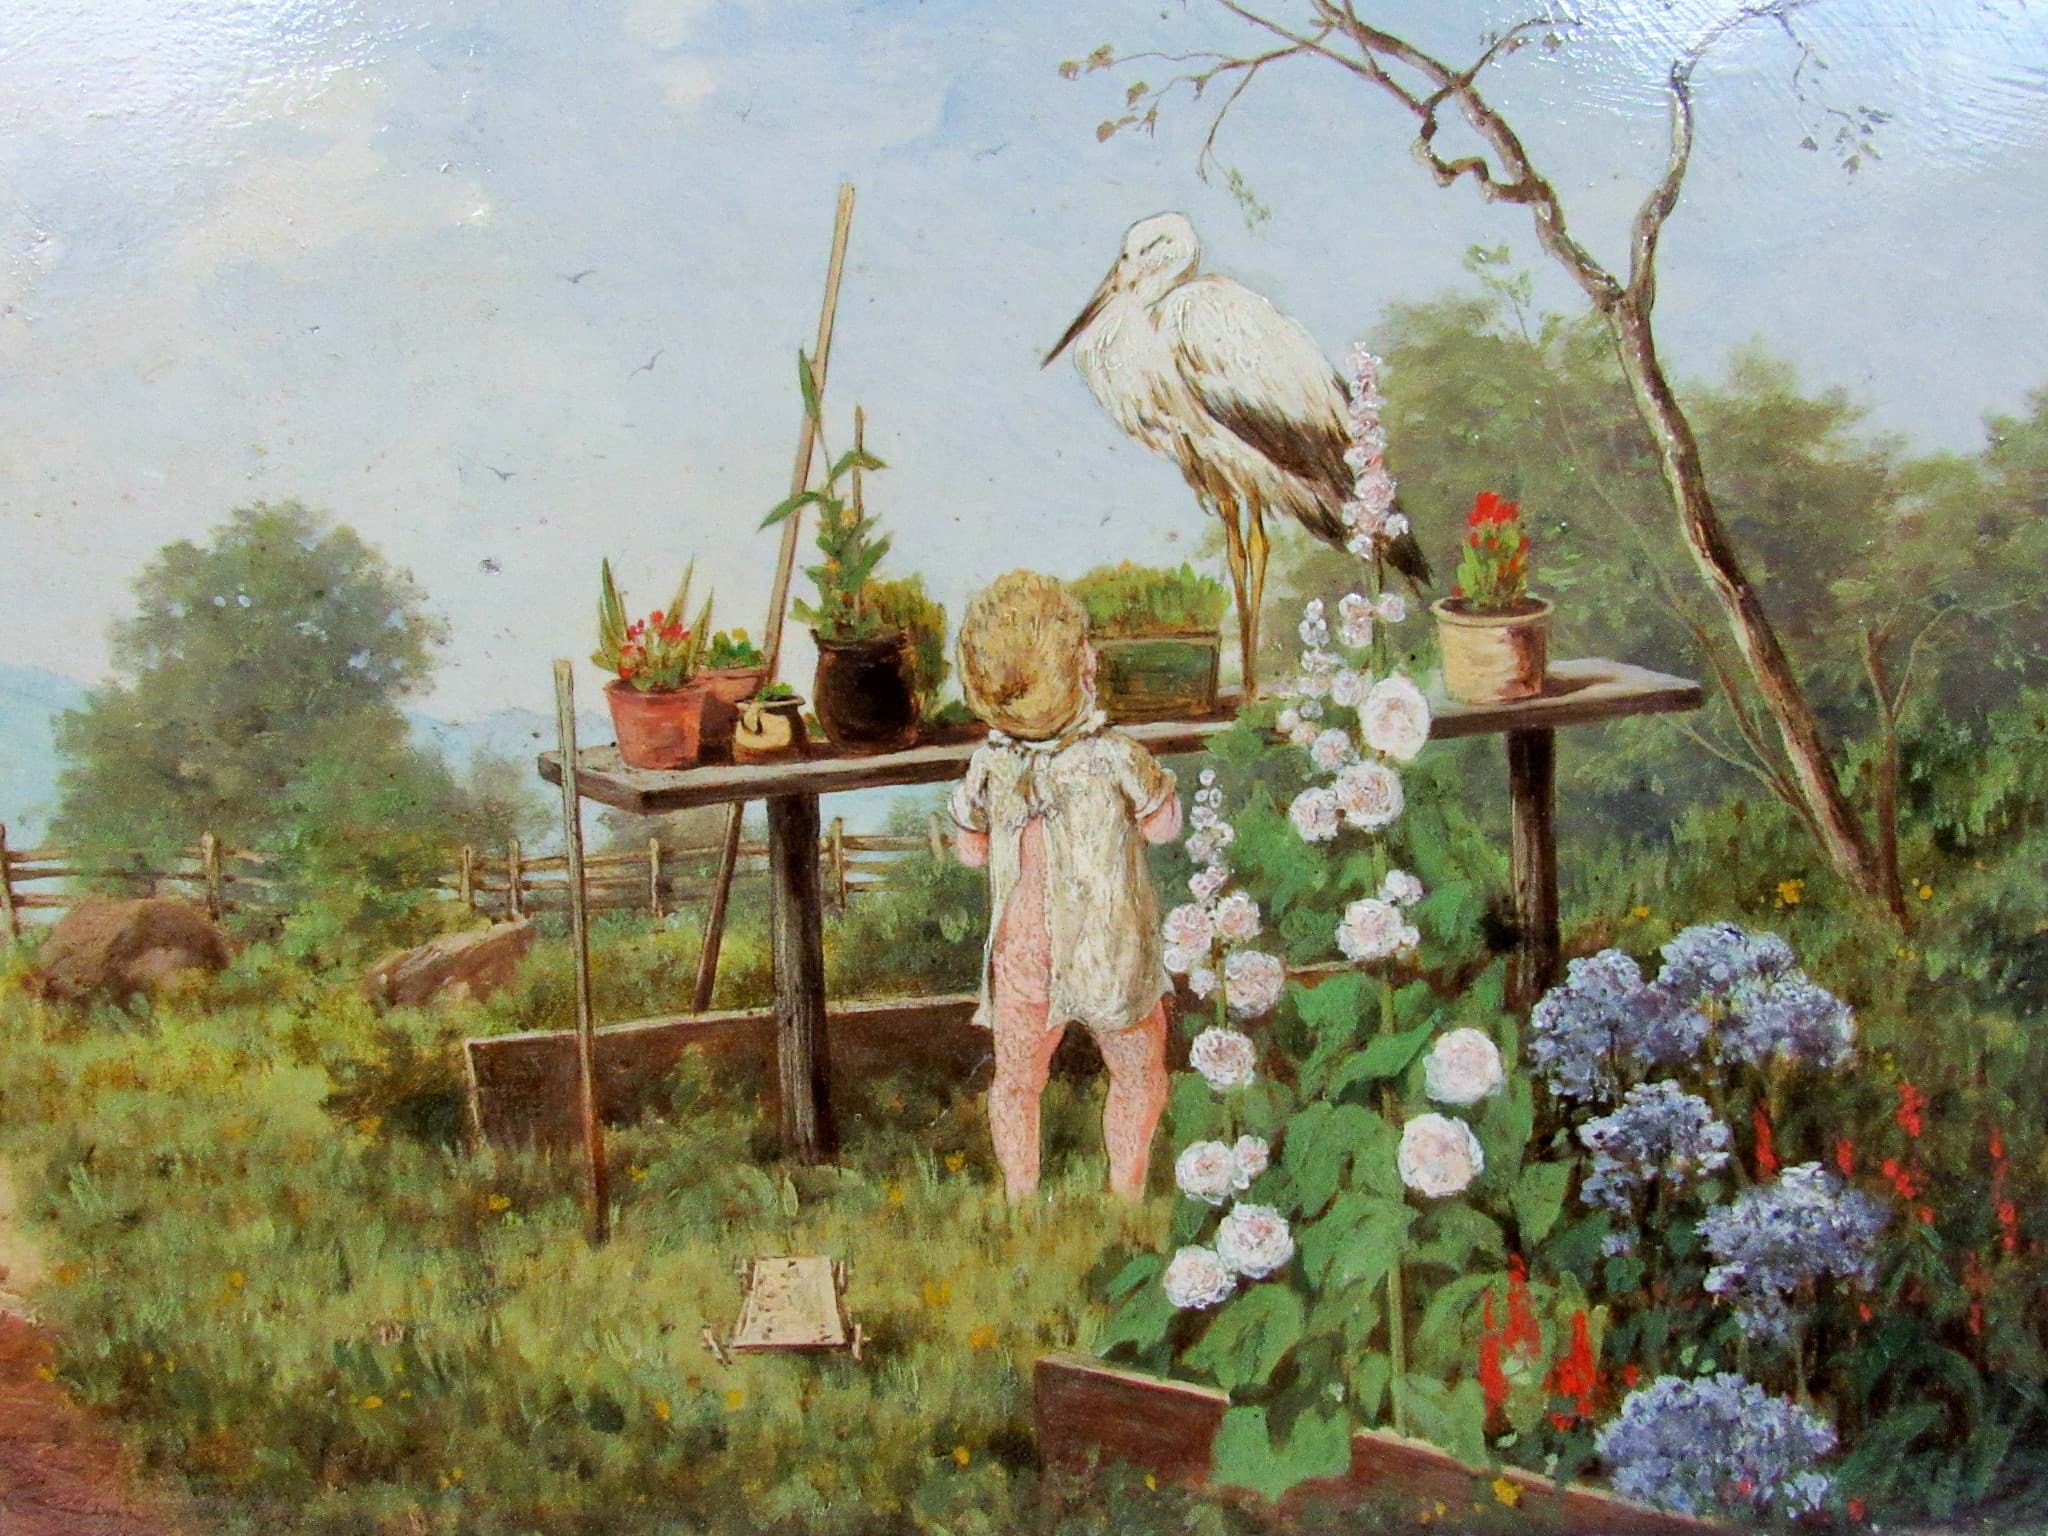 Bild av T. Tessani, 1890, Gemälde / Ölbild Impressionismus, Landschaft mit liebevoller Knaben Szene - Eine Frage !, Öl/Holz
